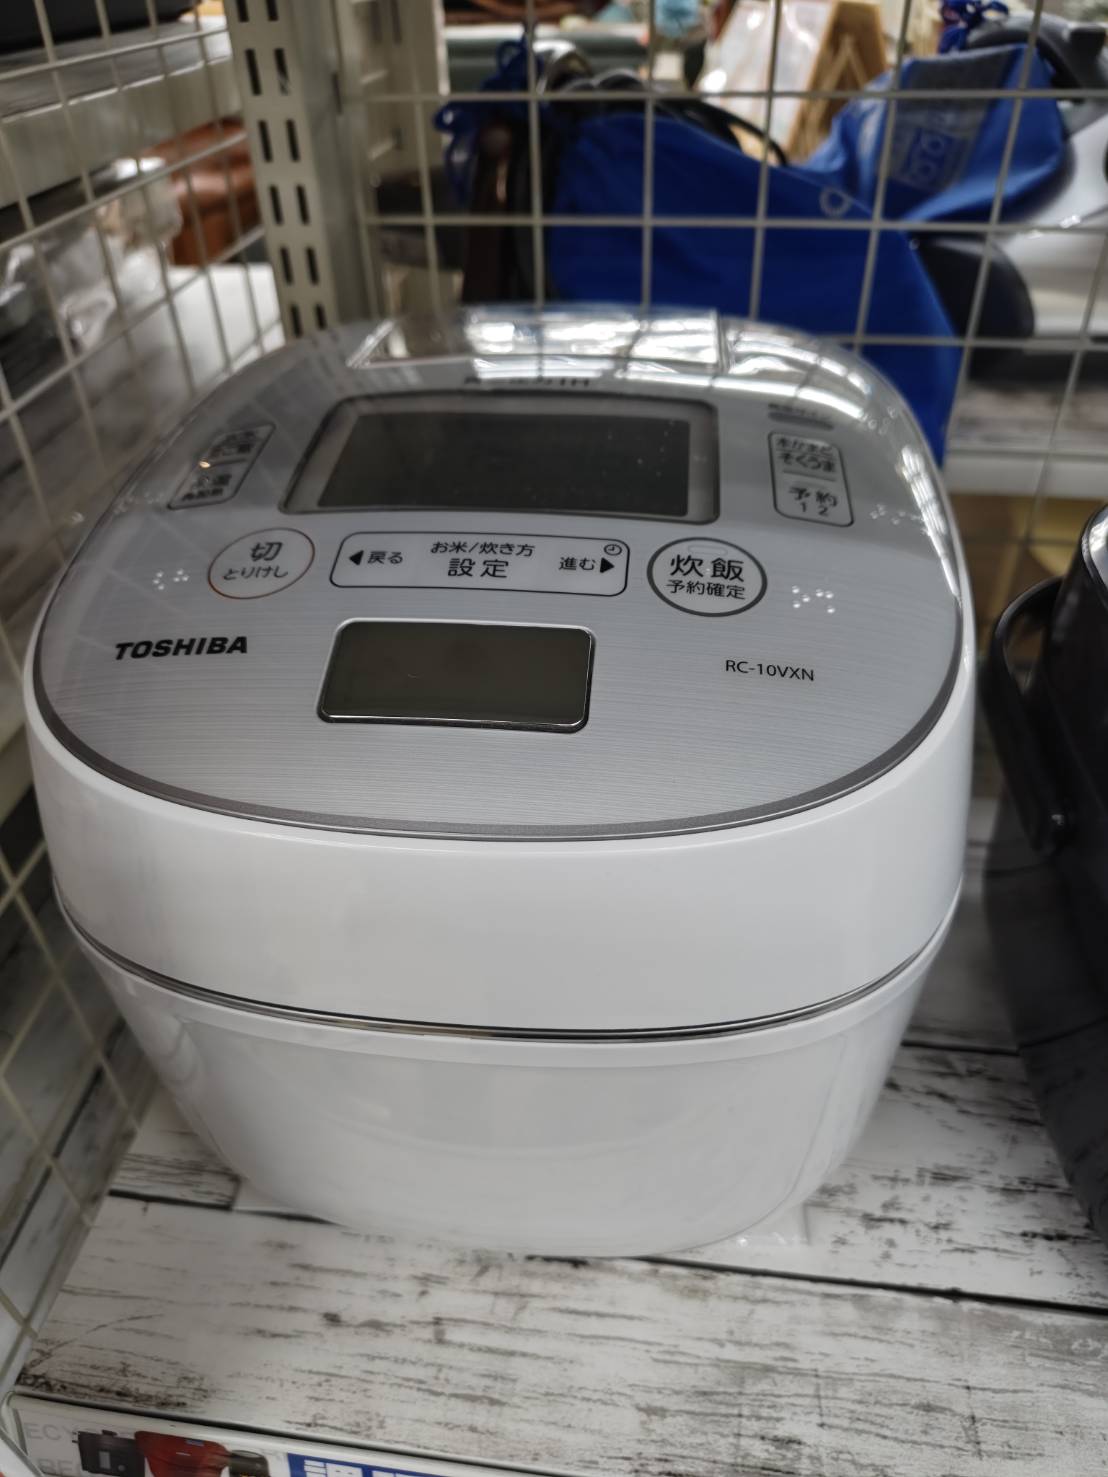 【TOSHIBA 5.5合炊飯器 RC-10VXN 東芝 2019年製】買取致しました！ - リサイクルマートは現在冷蔵庫の買取、家具の買取強化中です！お気軽にお問い合わせください。